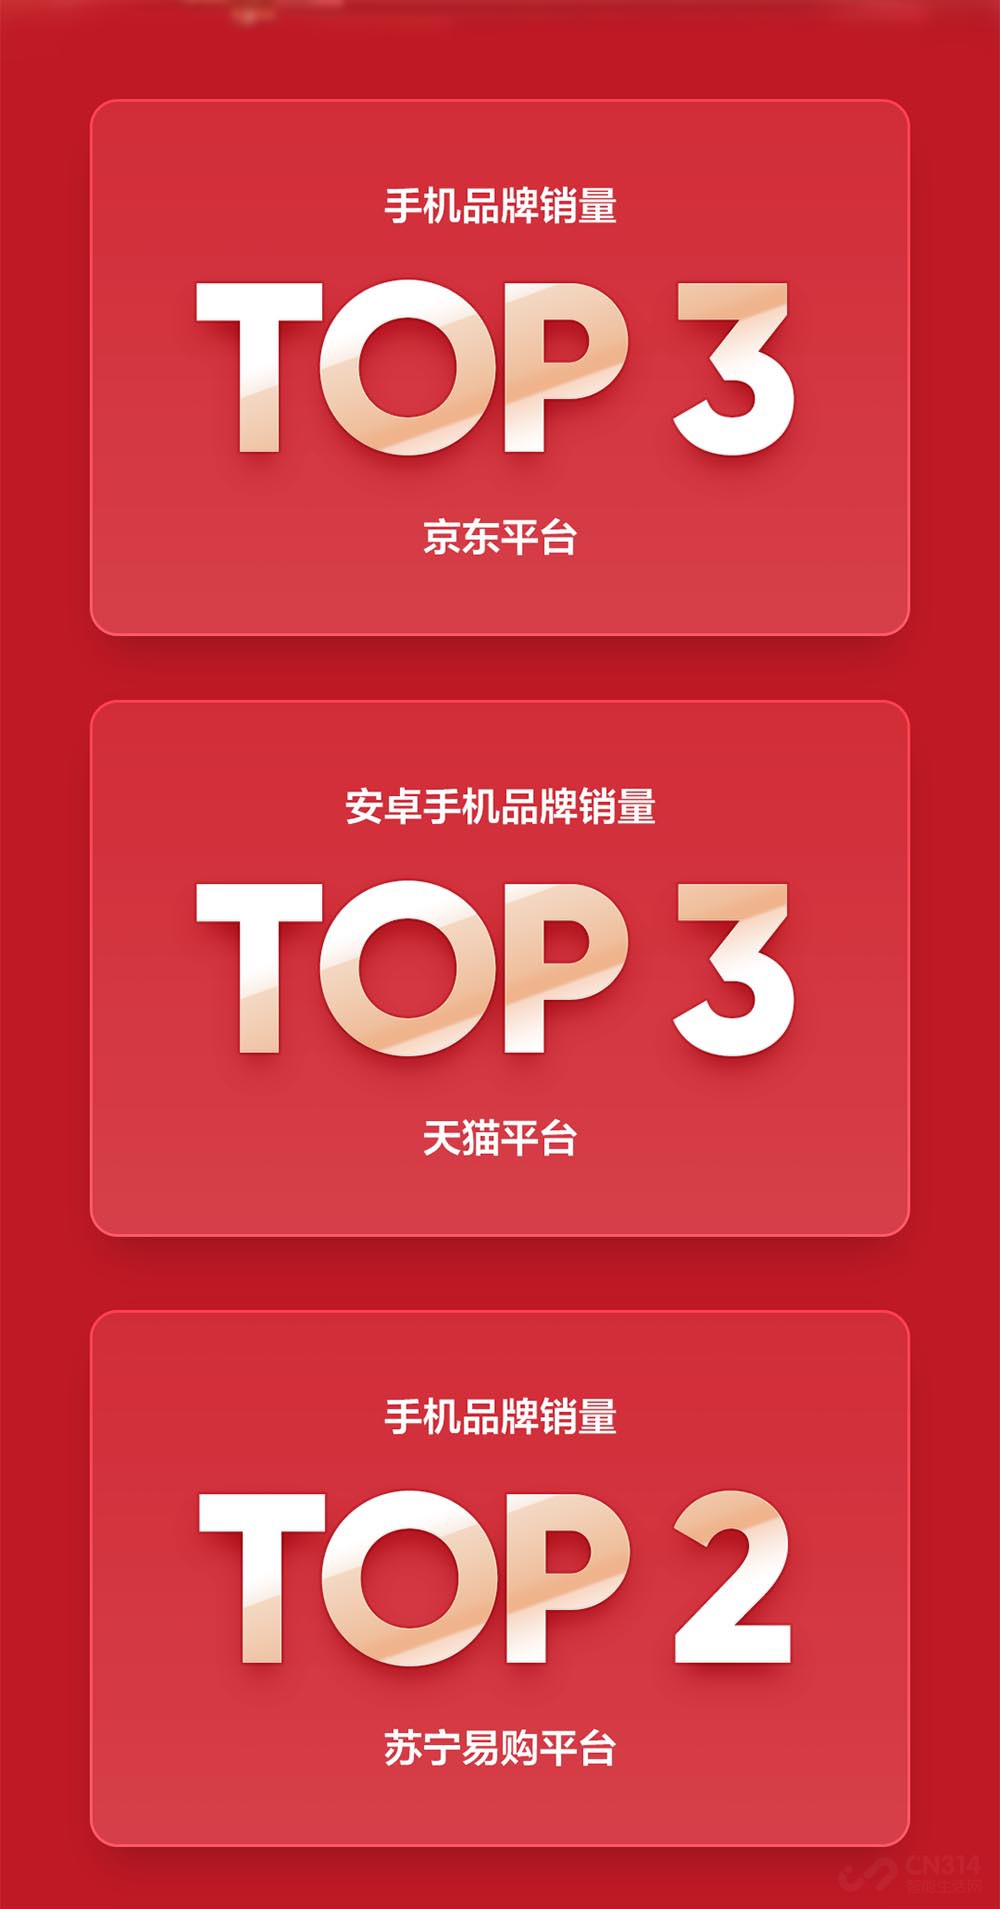 澎湃新闻苹果手机苏宁大卖香港苏宁购买苹果7购机小票-第1张图片-太平洋在线下载